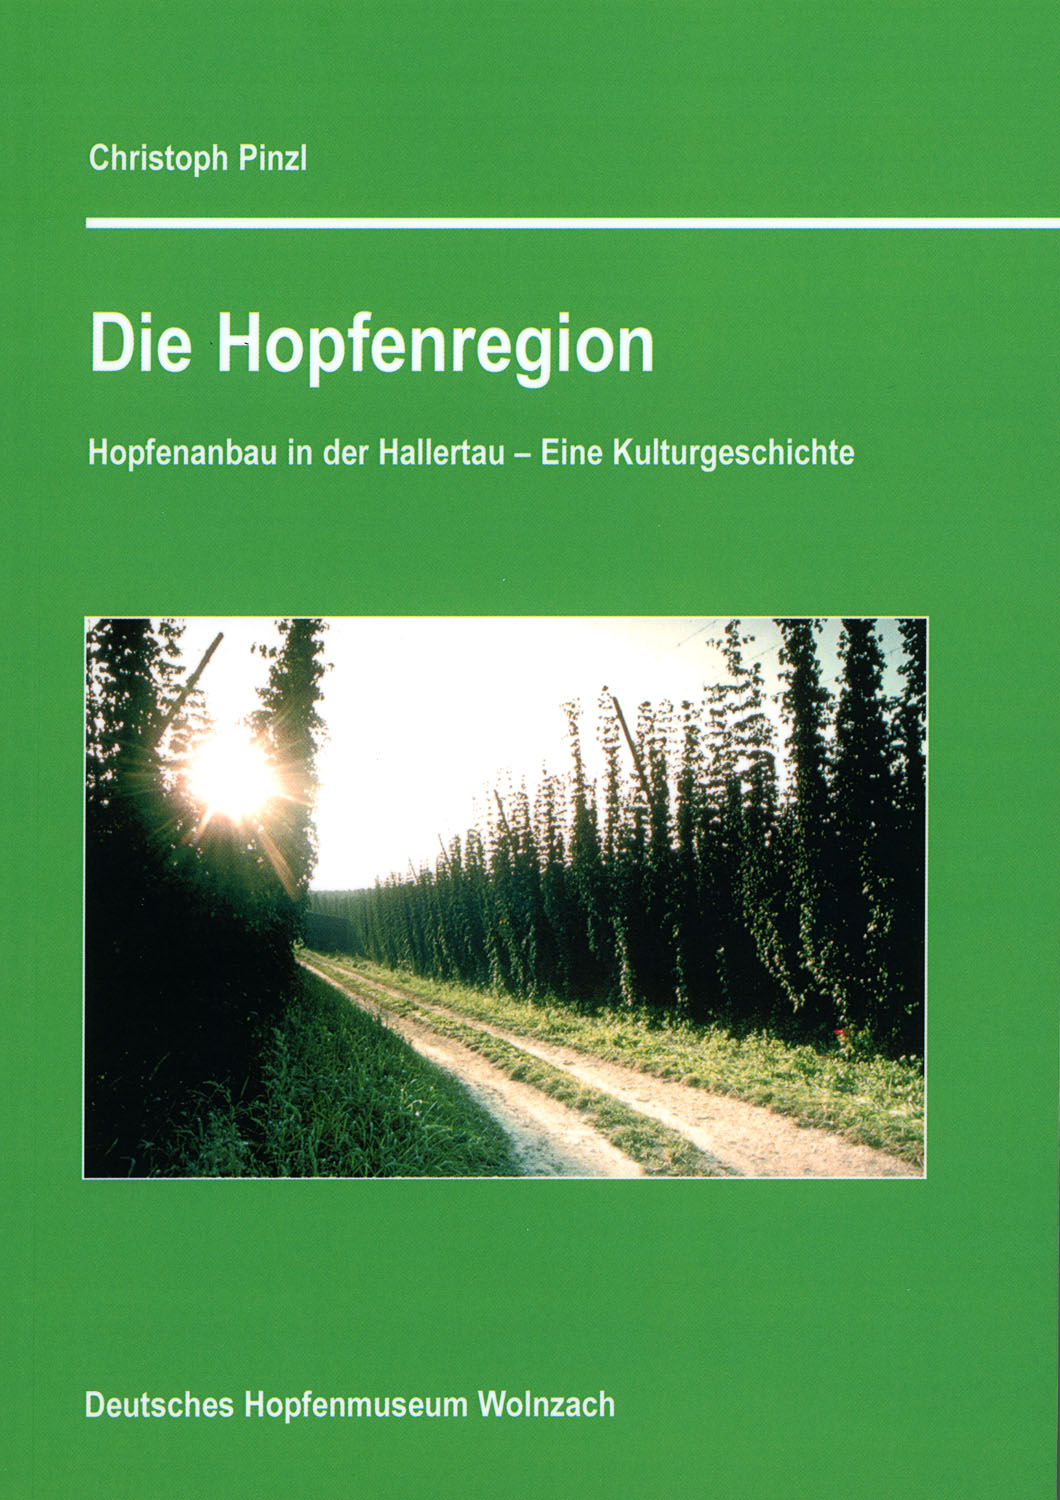 Title Die Hopfenregion